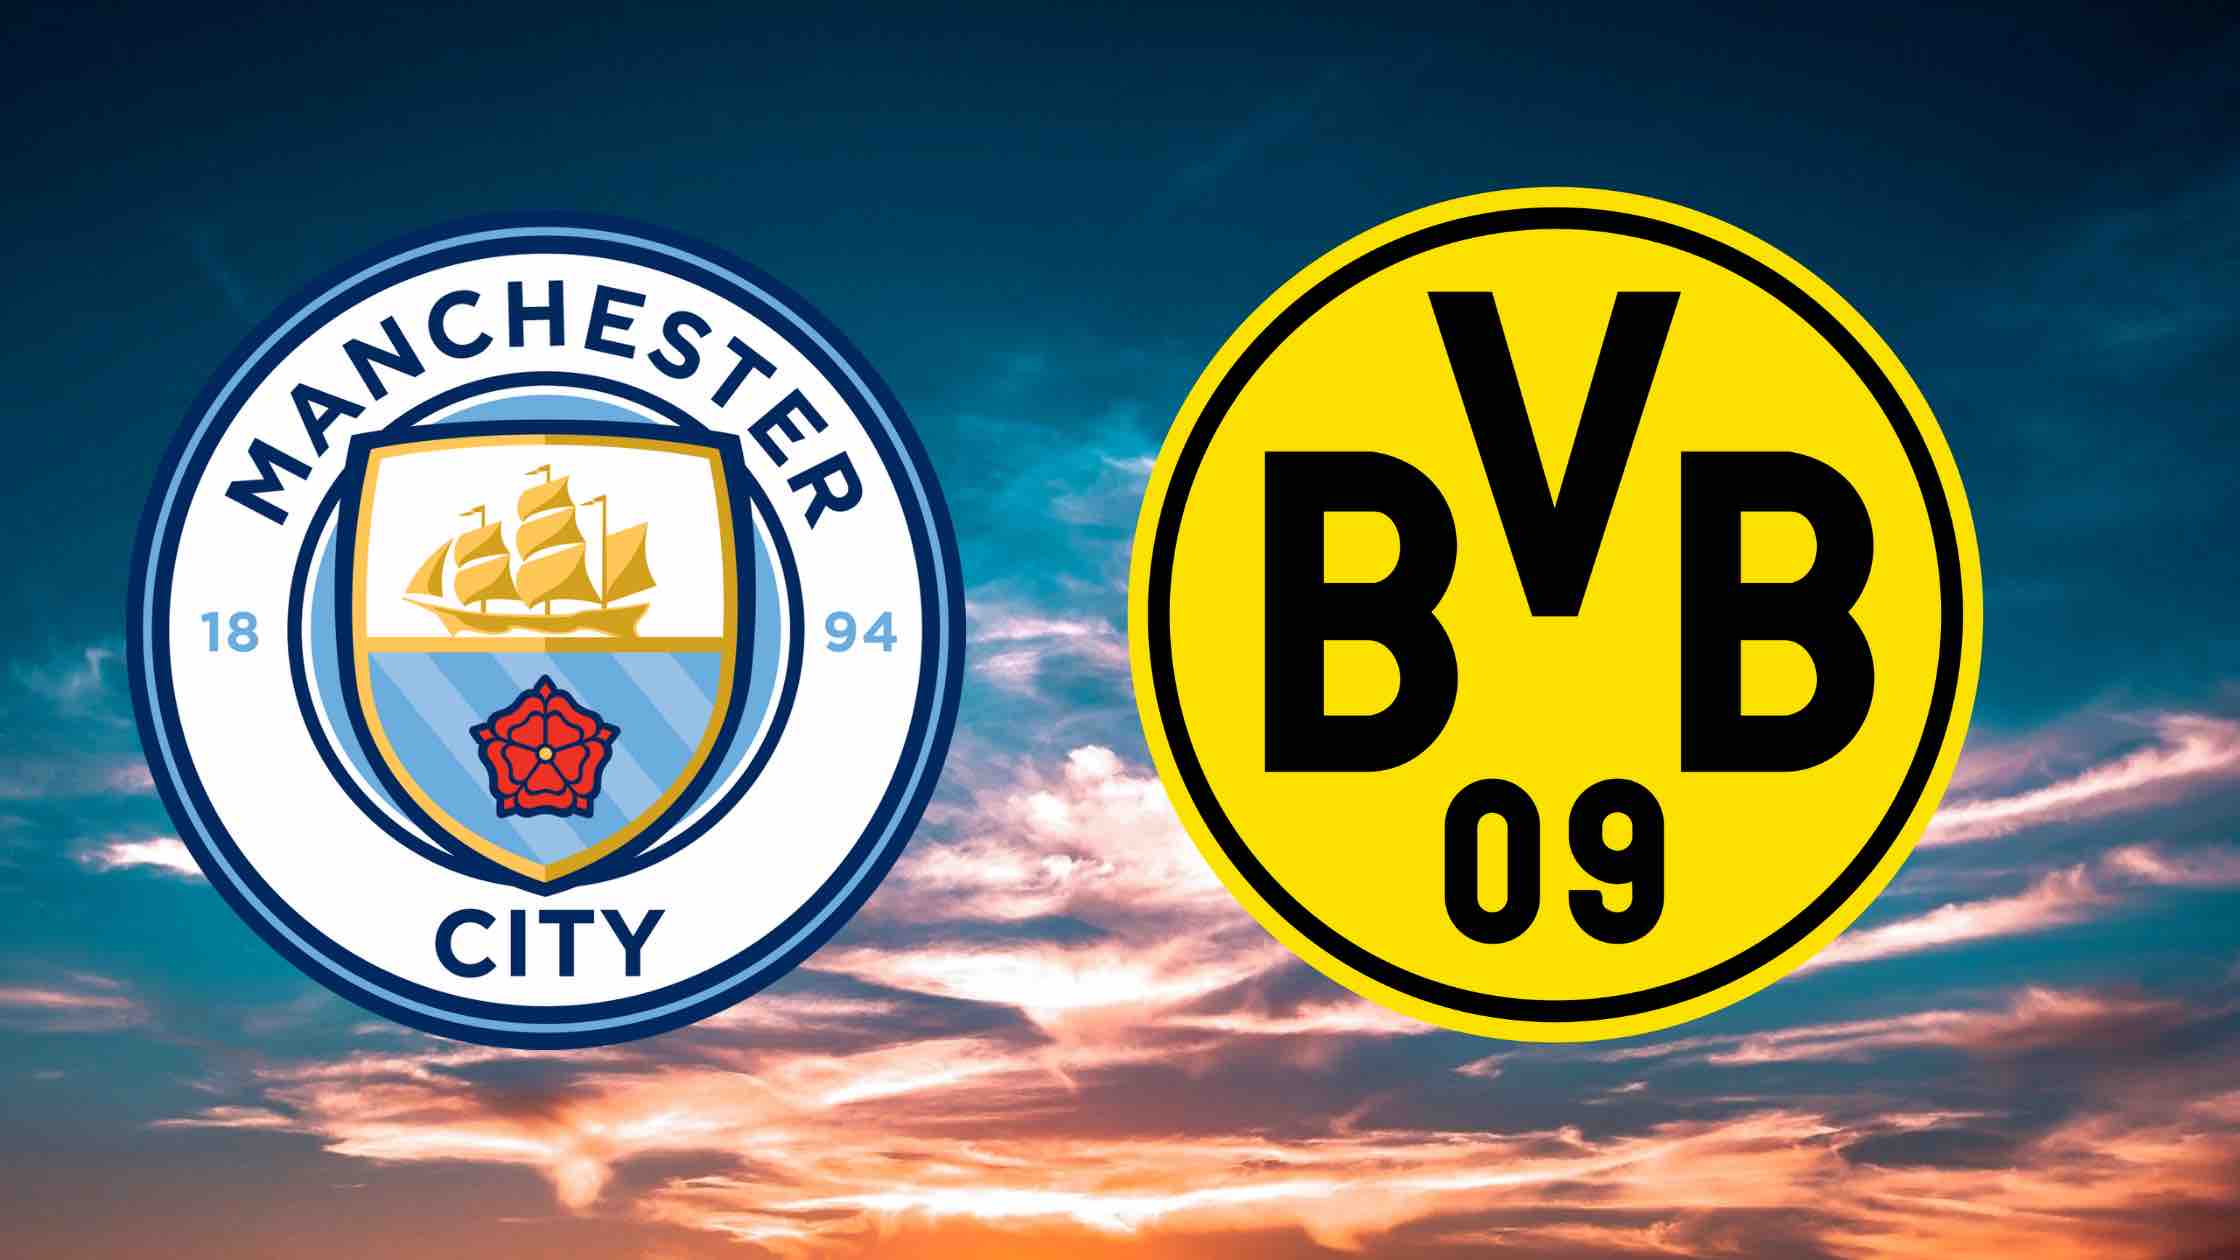 Manchester City - Borussia Dortmund / BVB treffen im Champions-League-Viertelfinale 2020/2021 aufeinander: live, heute Spiele, Live-Stream, Live-Ticker, TV-Übertragung, Champions-League-Achtelfinale, CL-Konferenz.